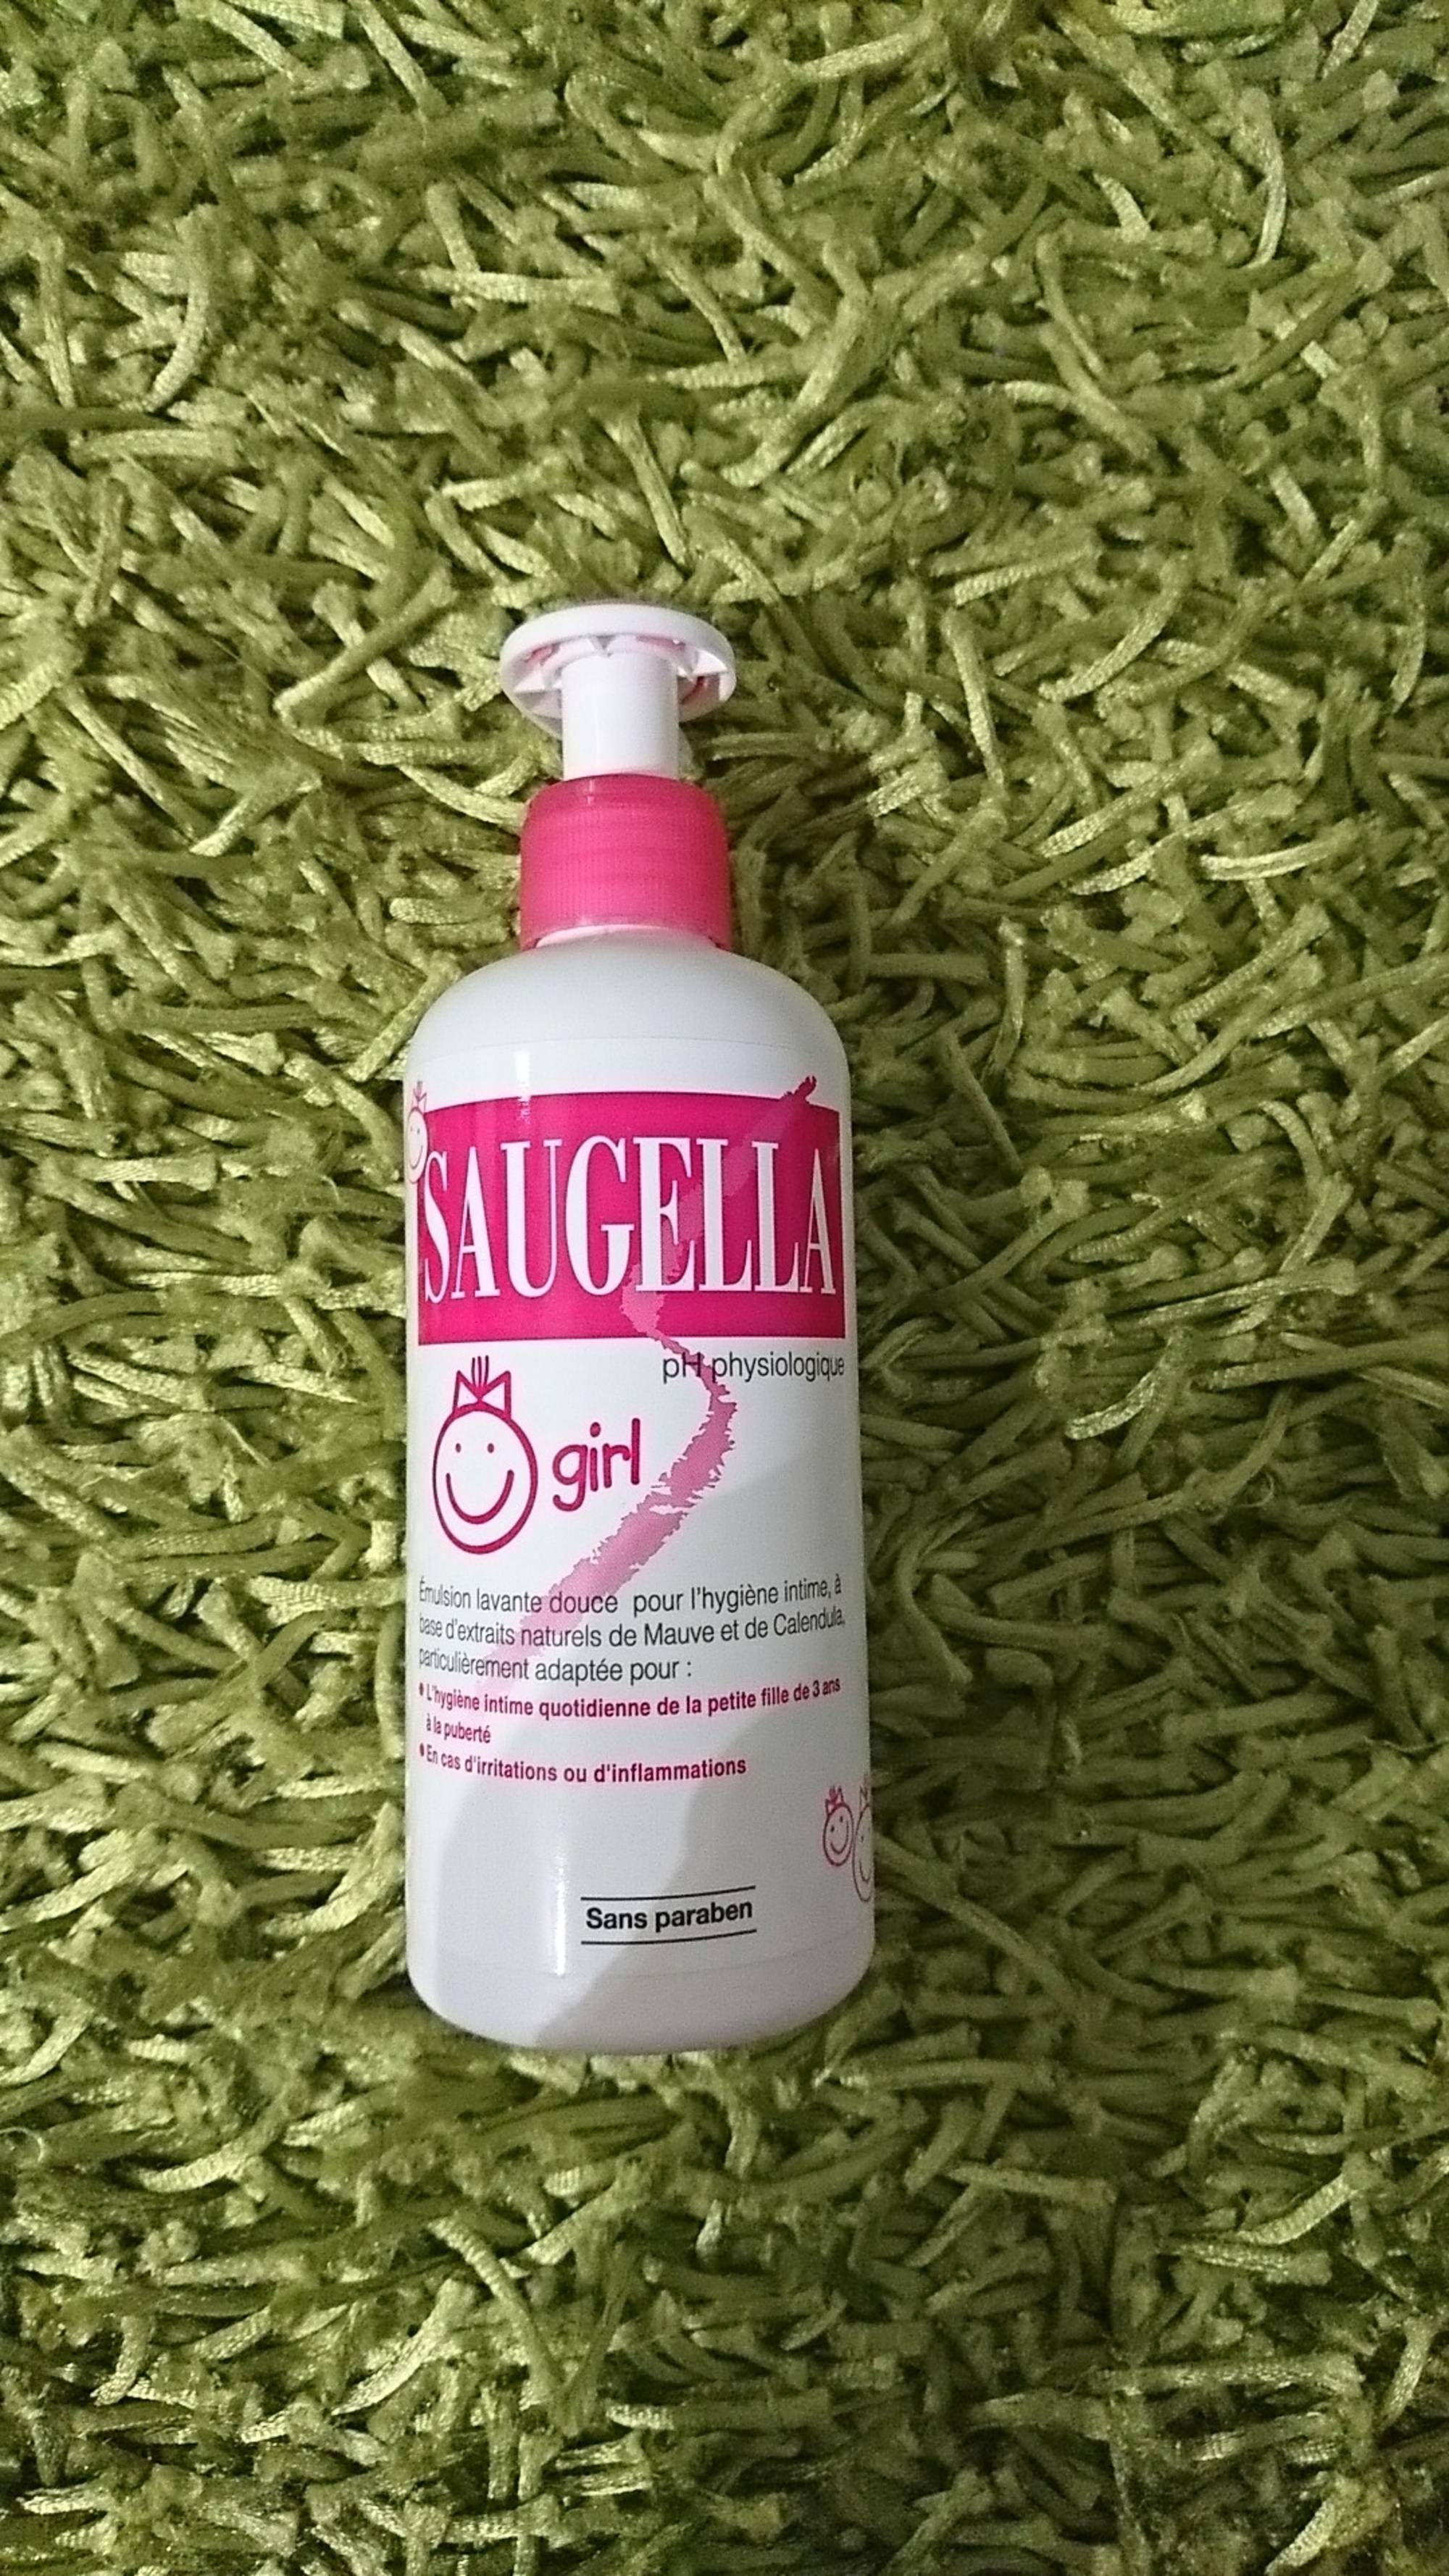 SAUGELLA - Girl - Emulsion lavante douce pour l'hygiène intime